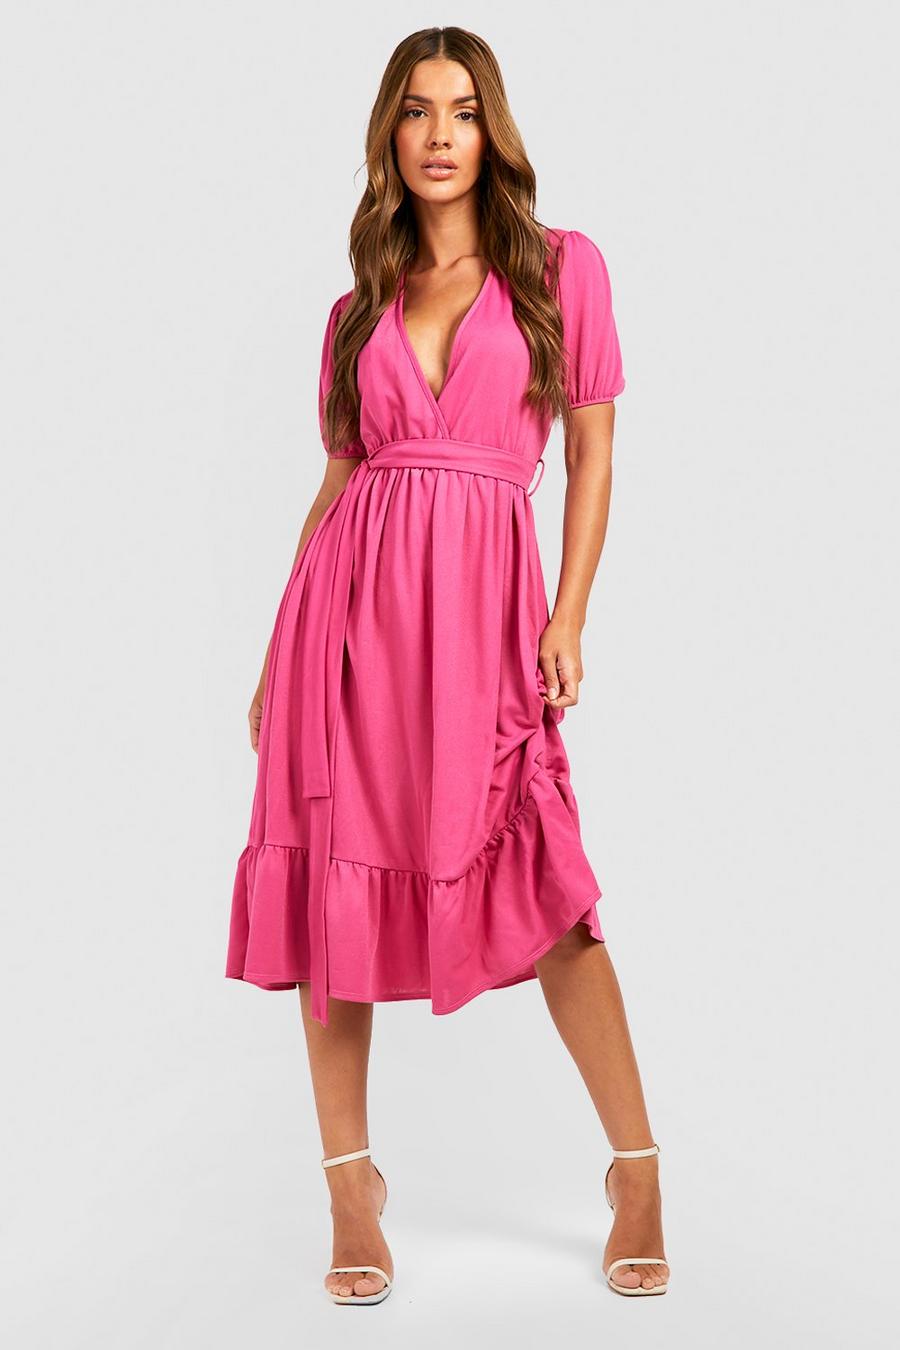 Hot pink Midiklänning i omlottmodell med puffärm